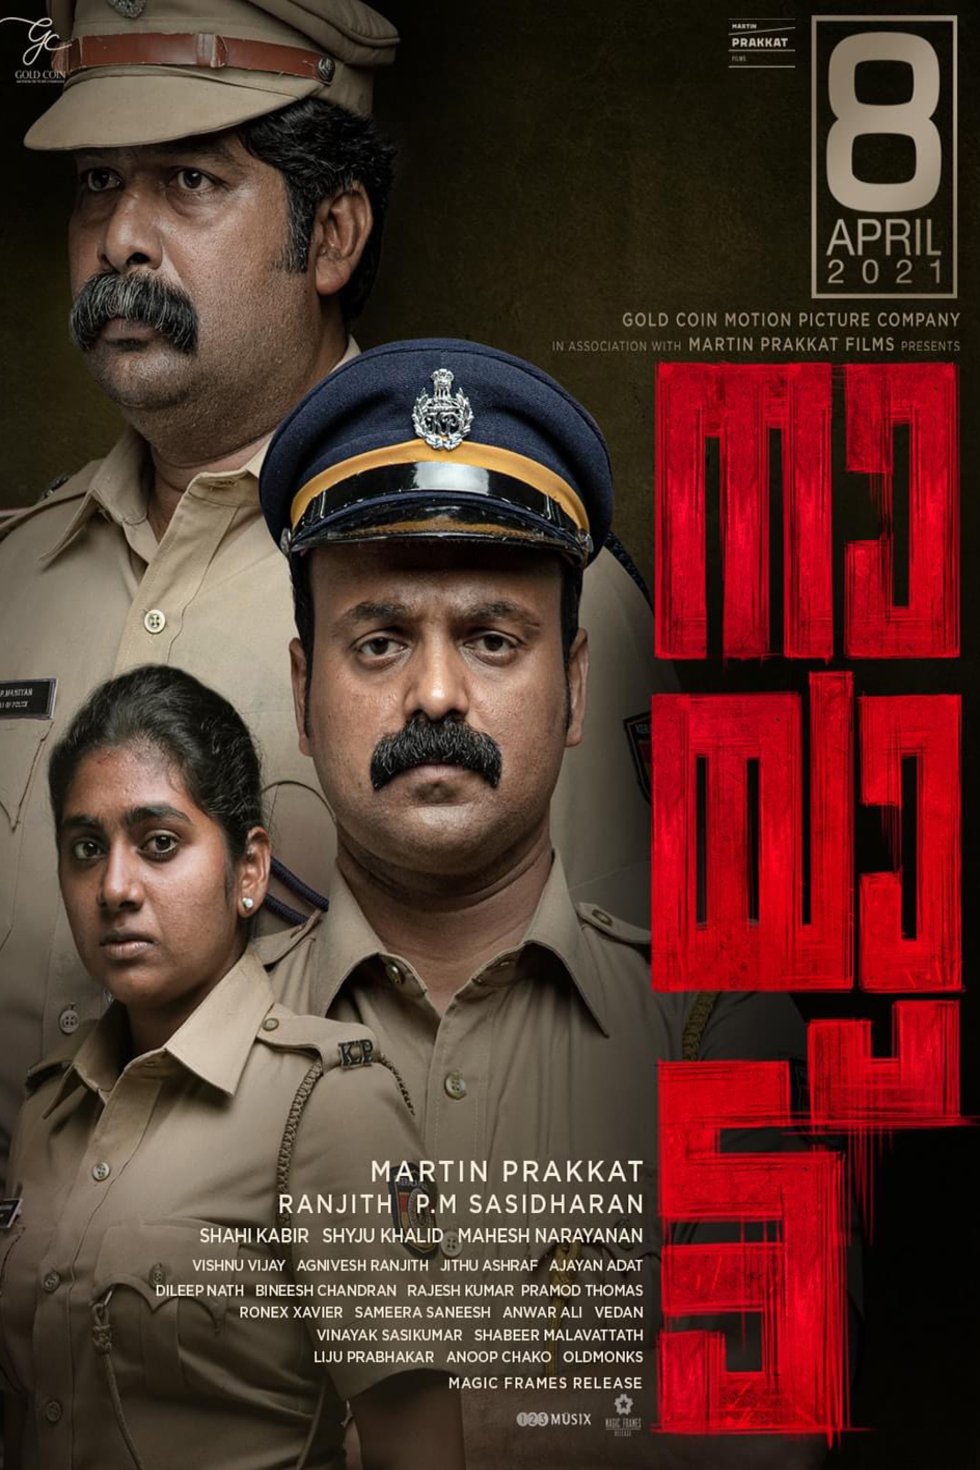 Malayalam poster of the movie Nayattu